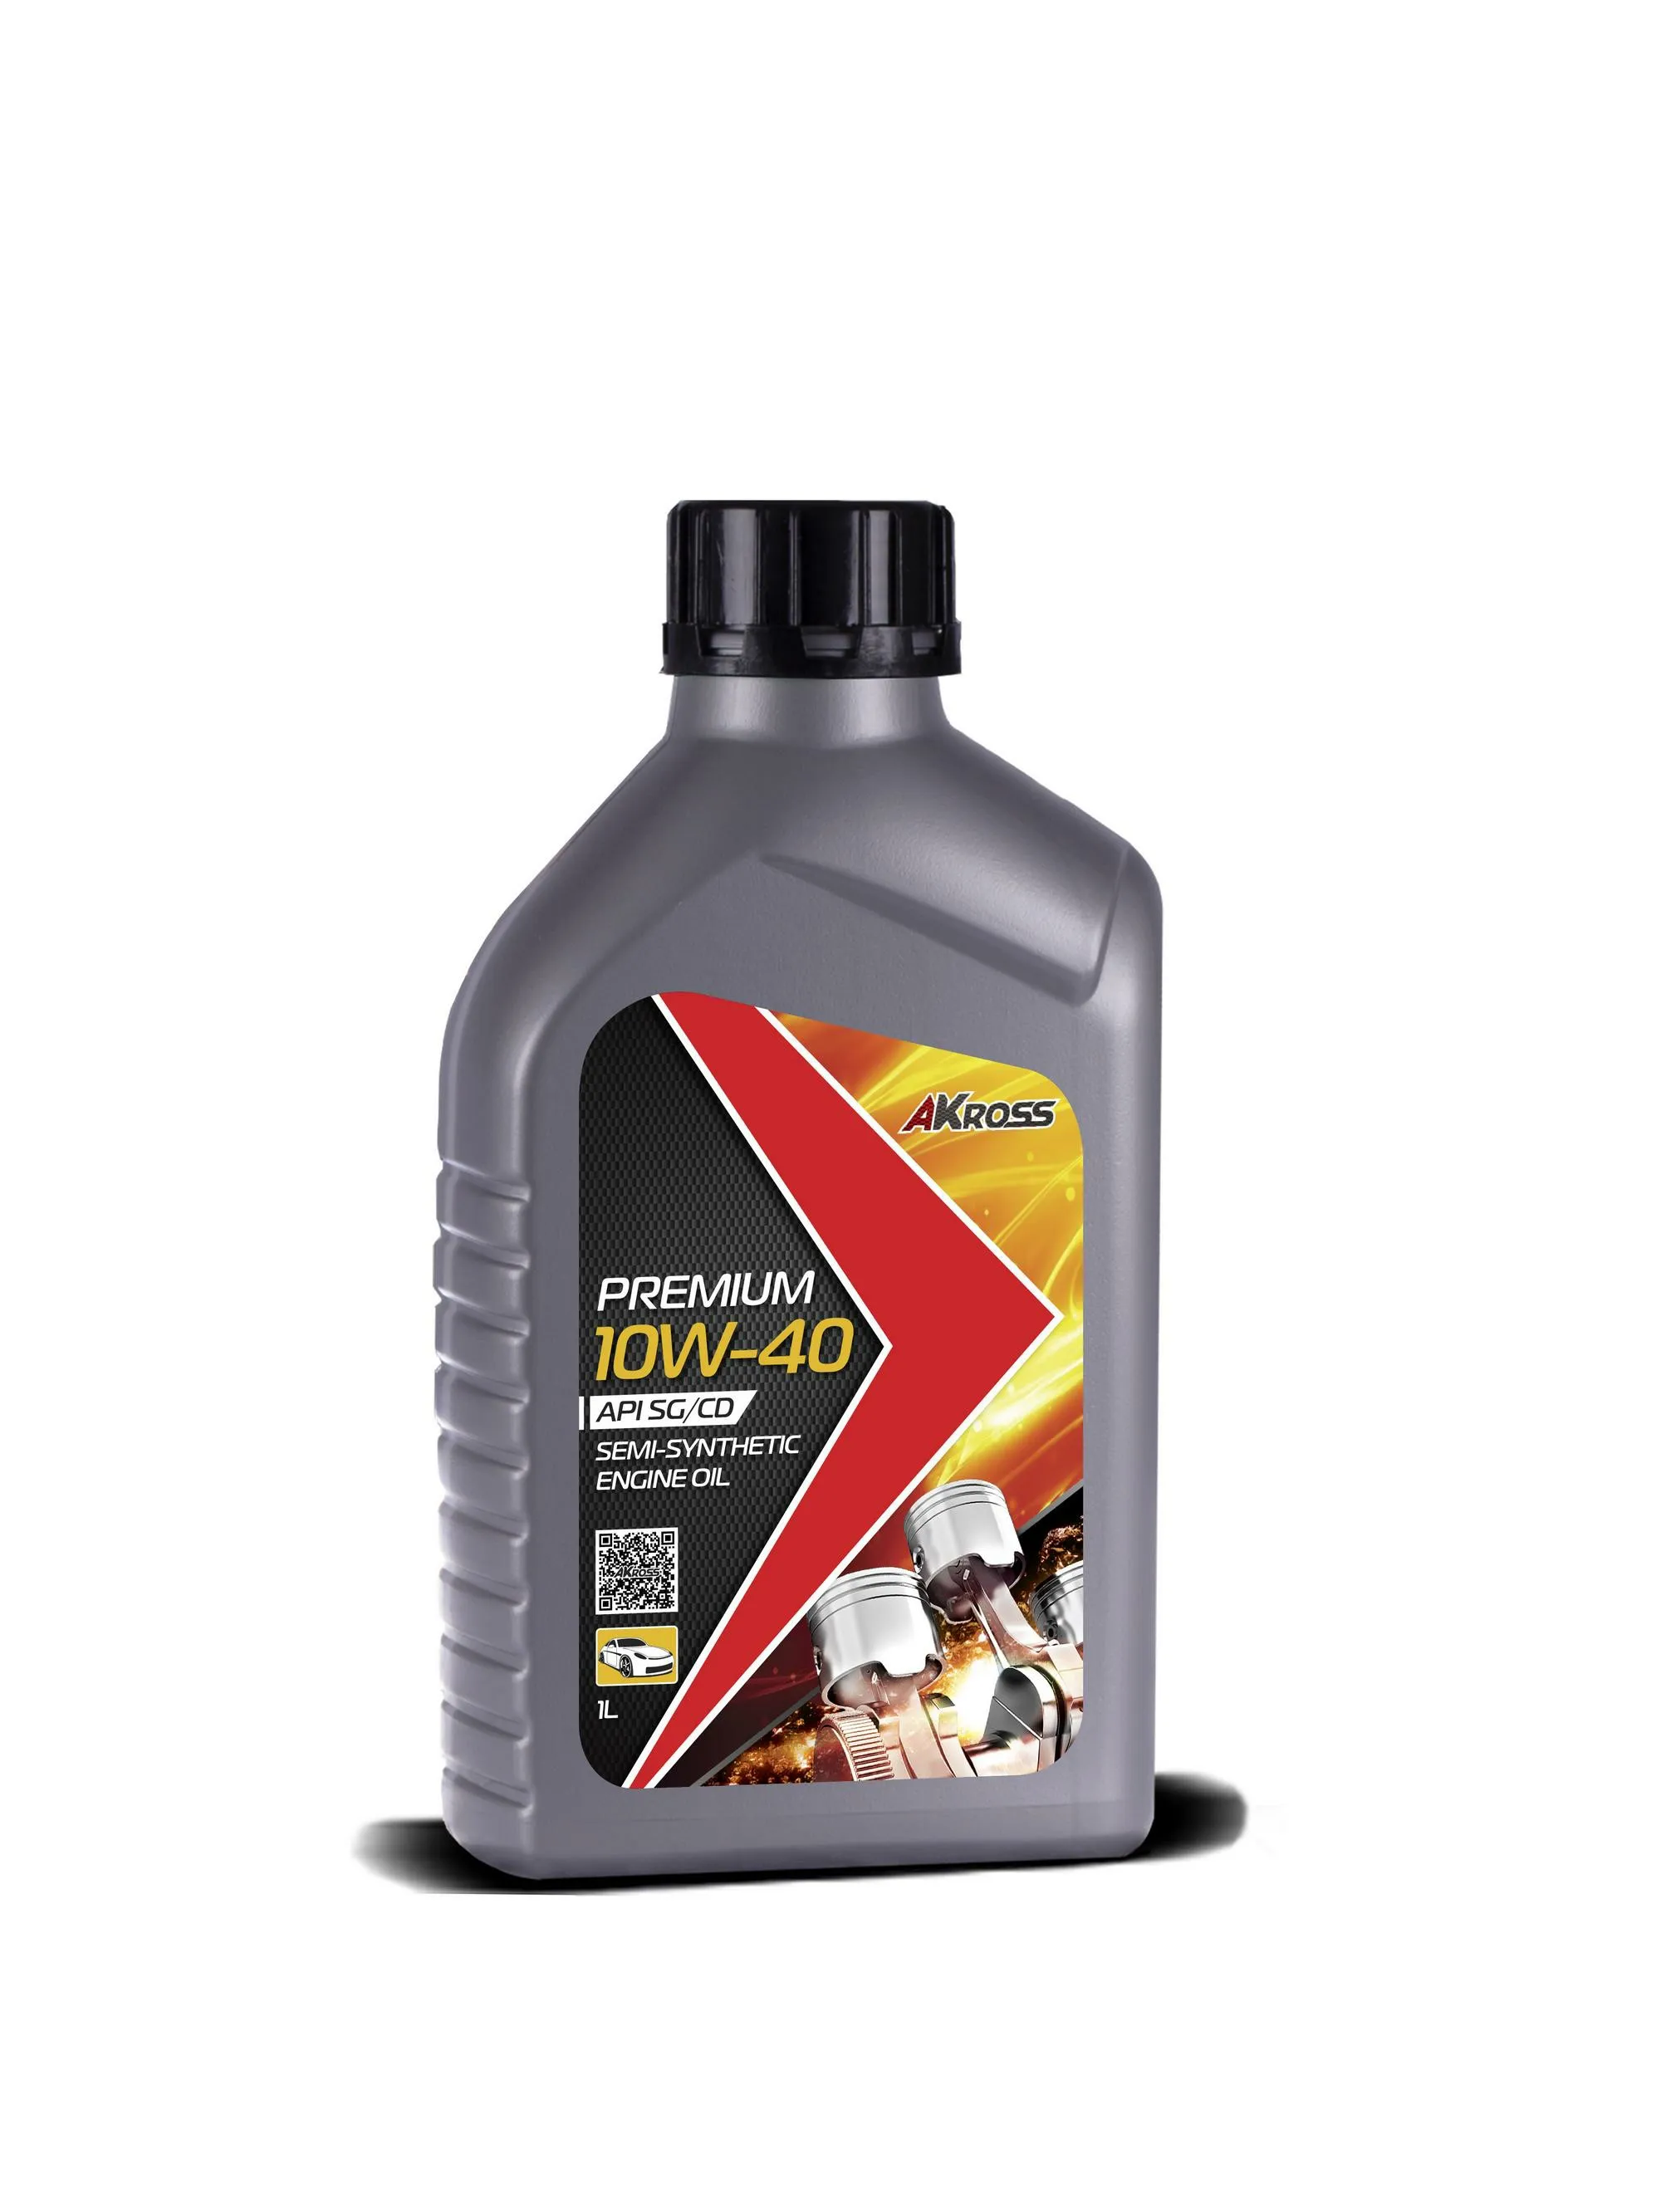 Моторное масло Акросс 1кг 10w-40 Premium#1